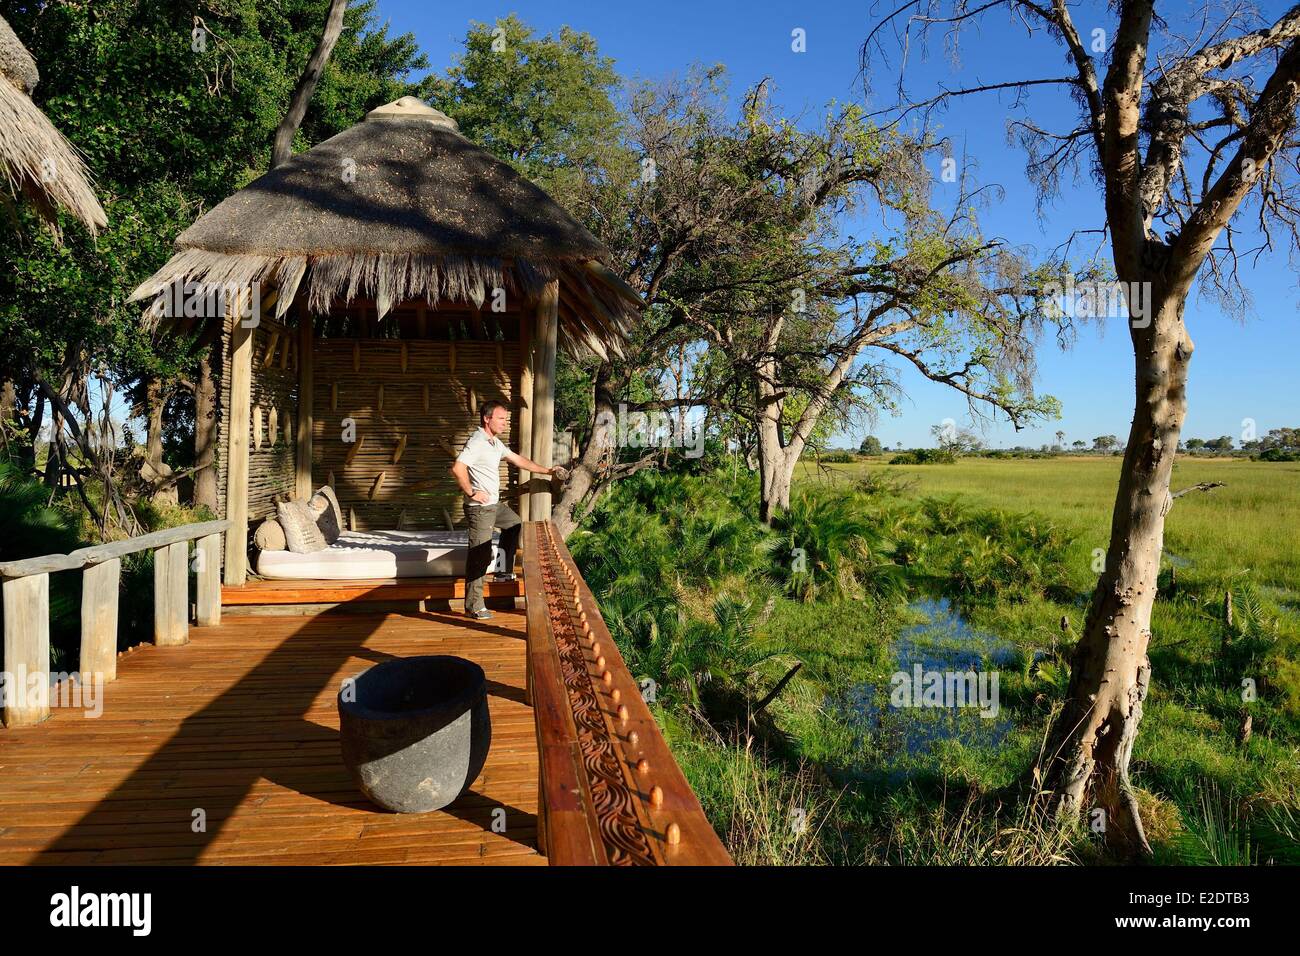 La Jao Camp est un camp de luxe au coeur du delta de l'Okavango dans la réserve de Jao privé accessible par air taxi Banque D'Images